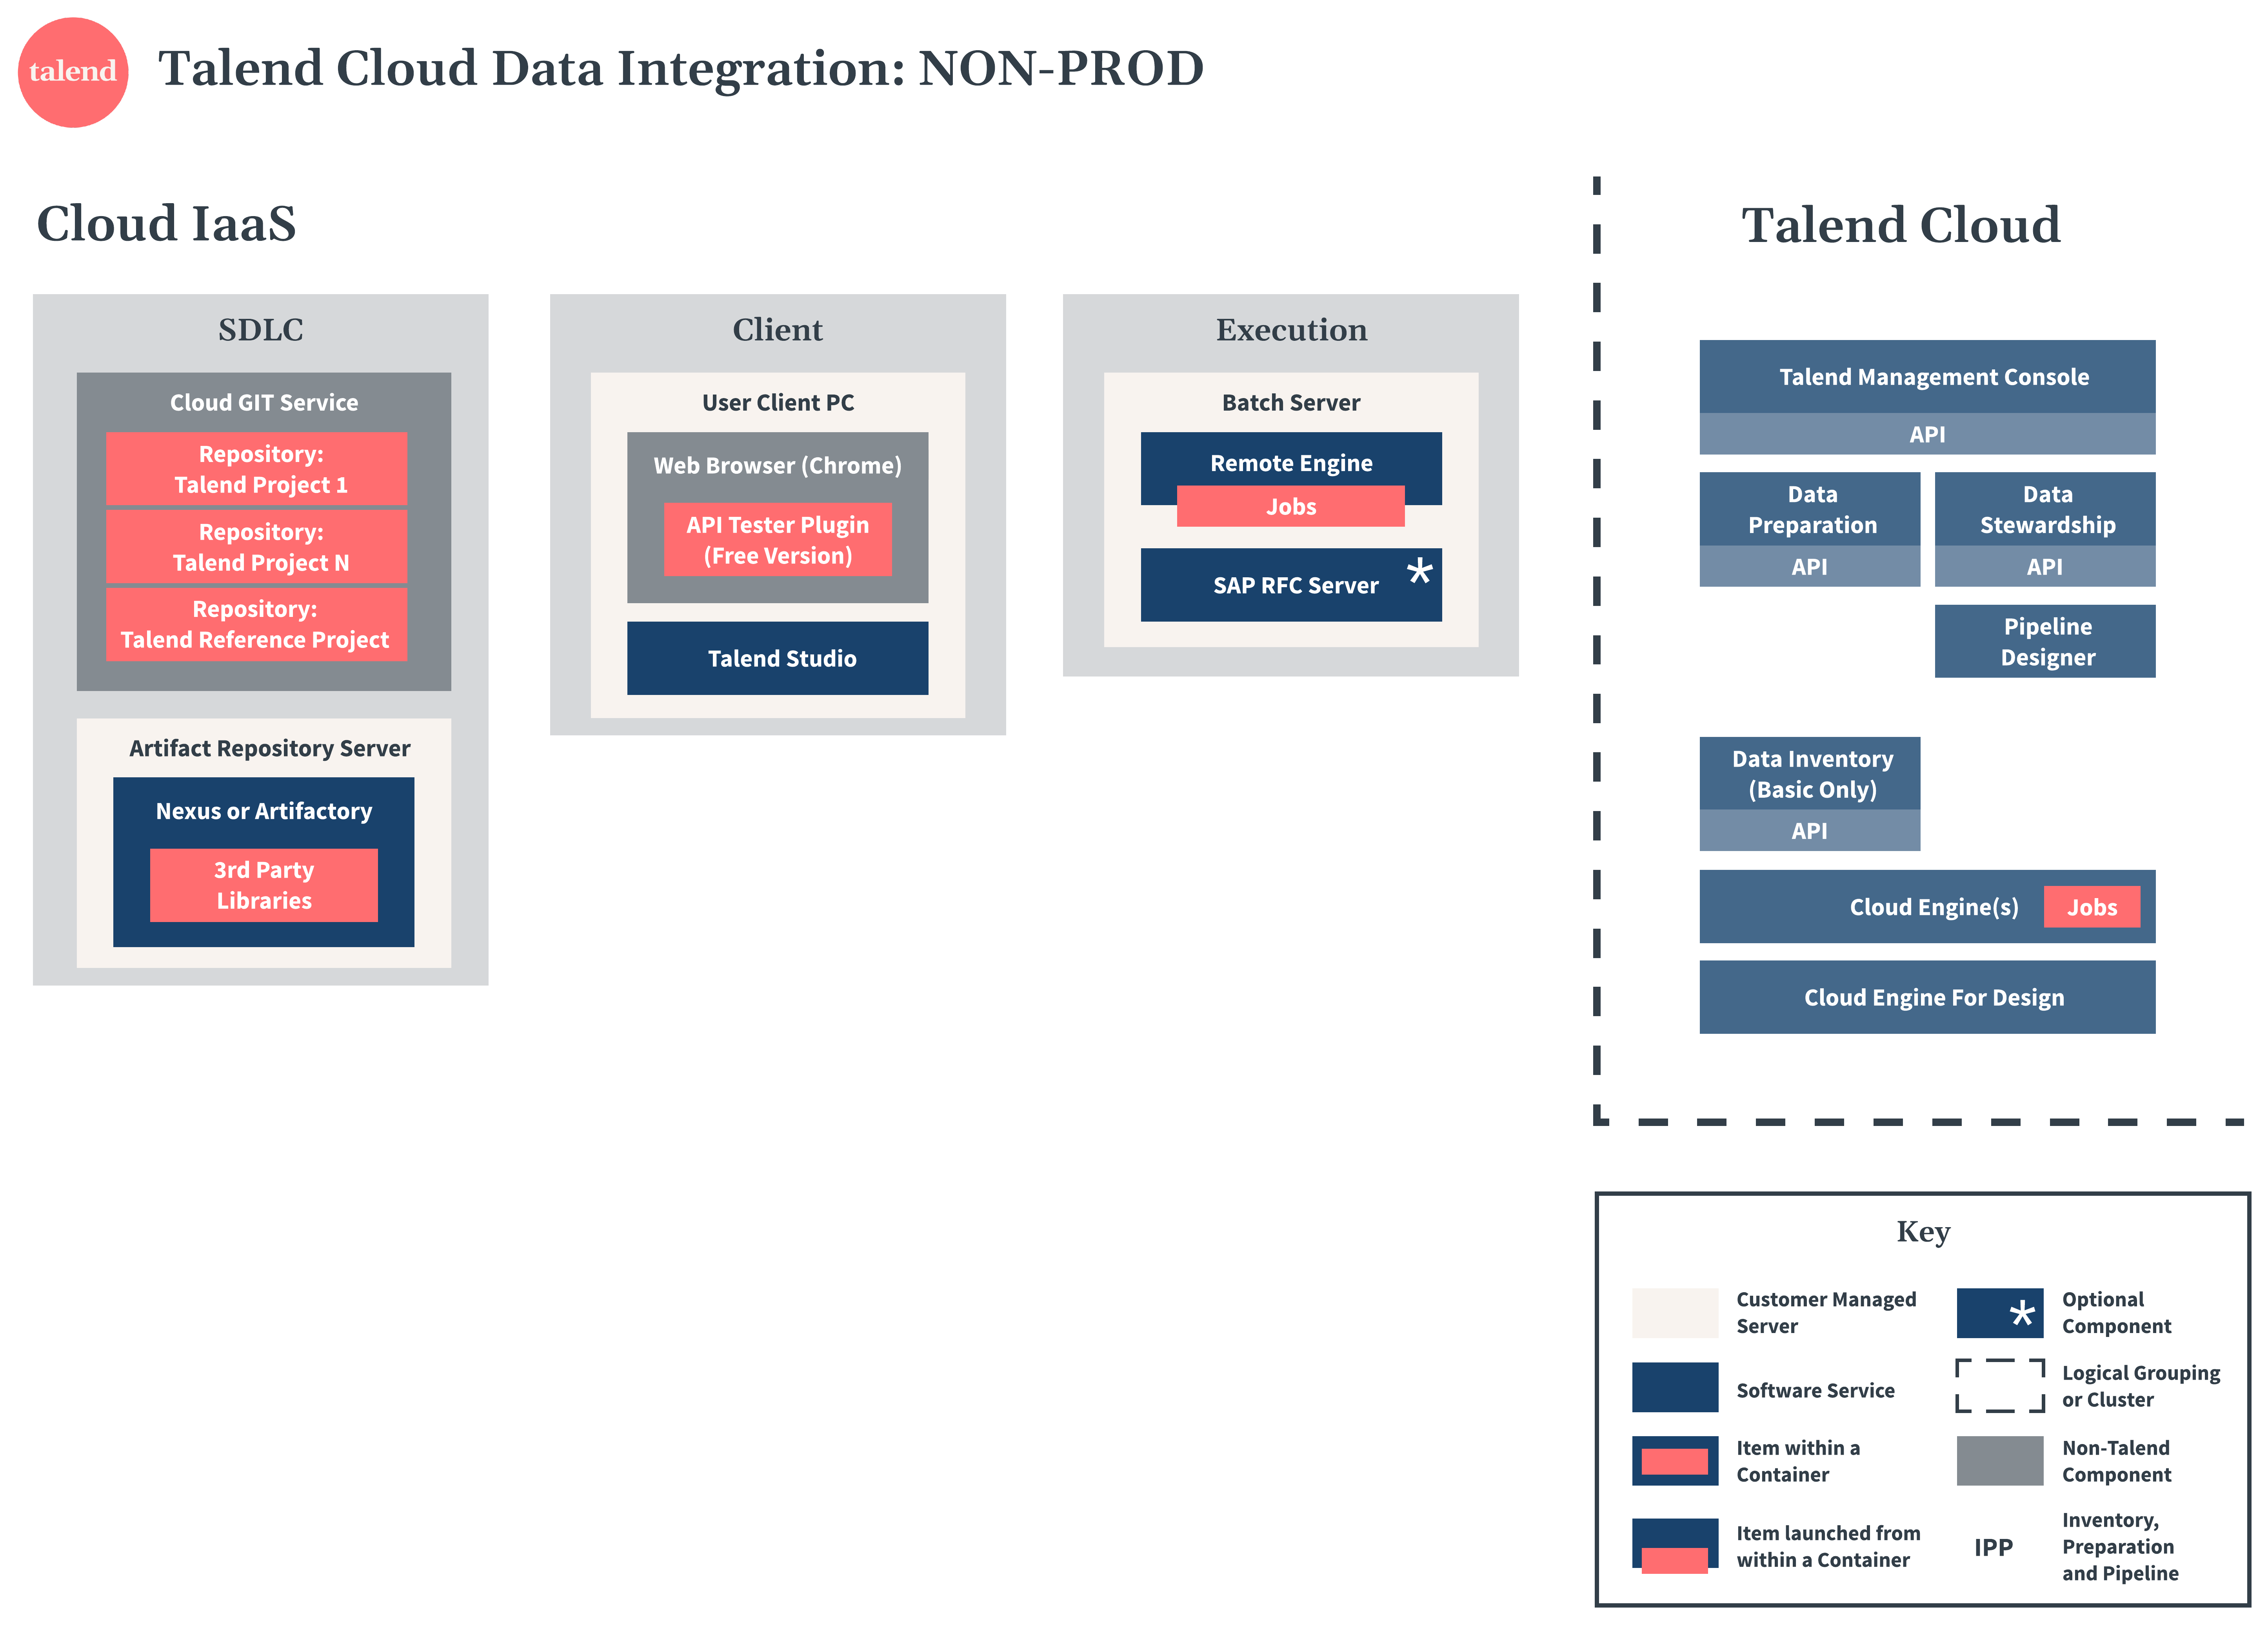 Talend Cloud Data Integration non-production diagram.